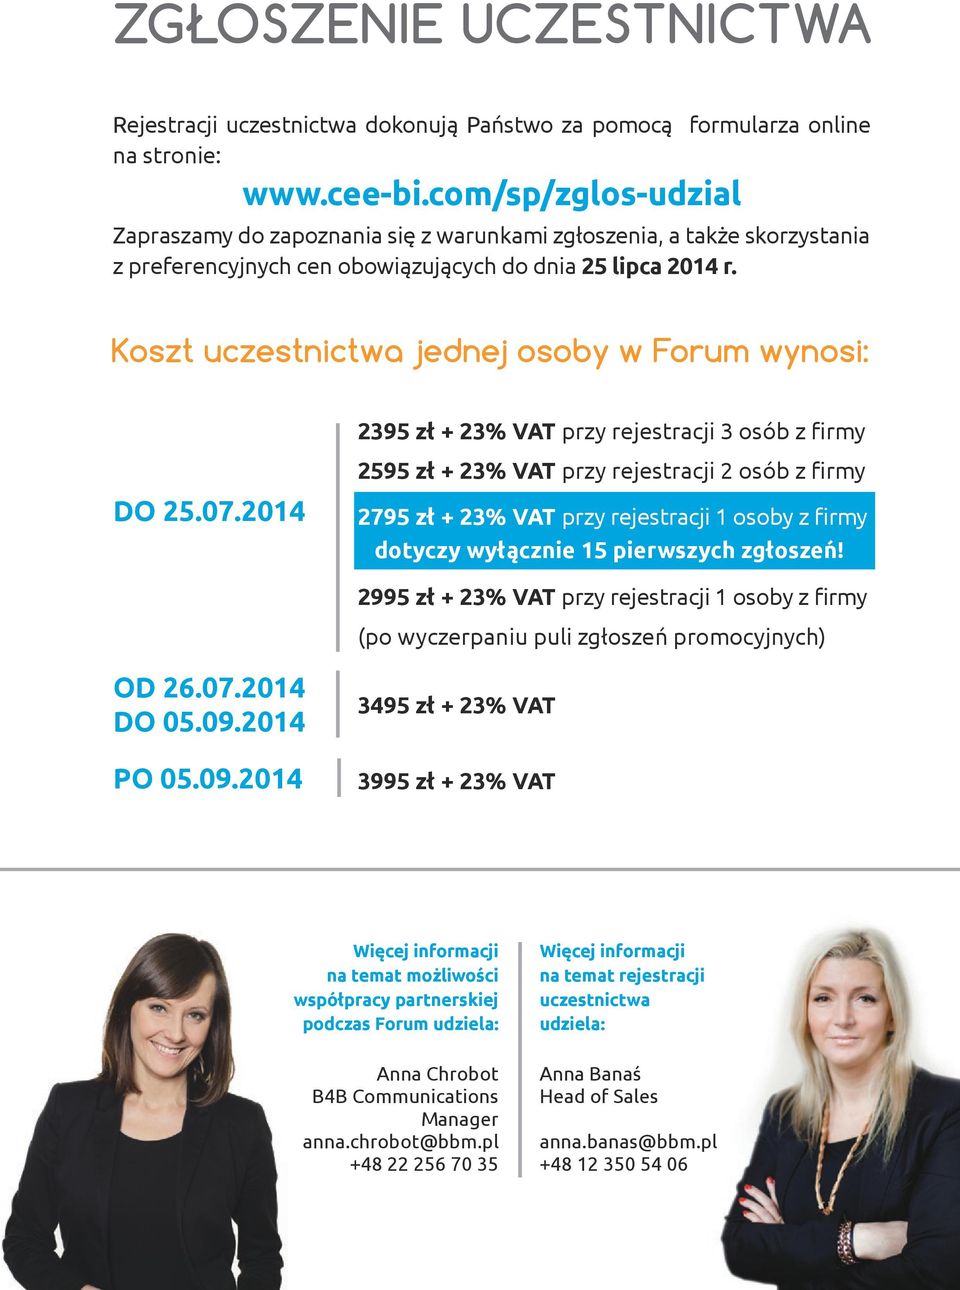 Koszt uczestnictwa jednej osoby w Forum wynosi: 2395 zł + 23% VAT przy rejestracji 3 osób z firmy DO 25.07.